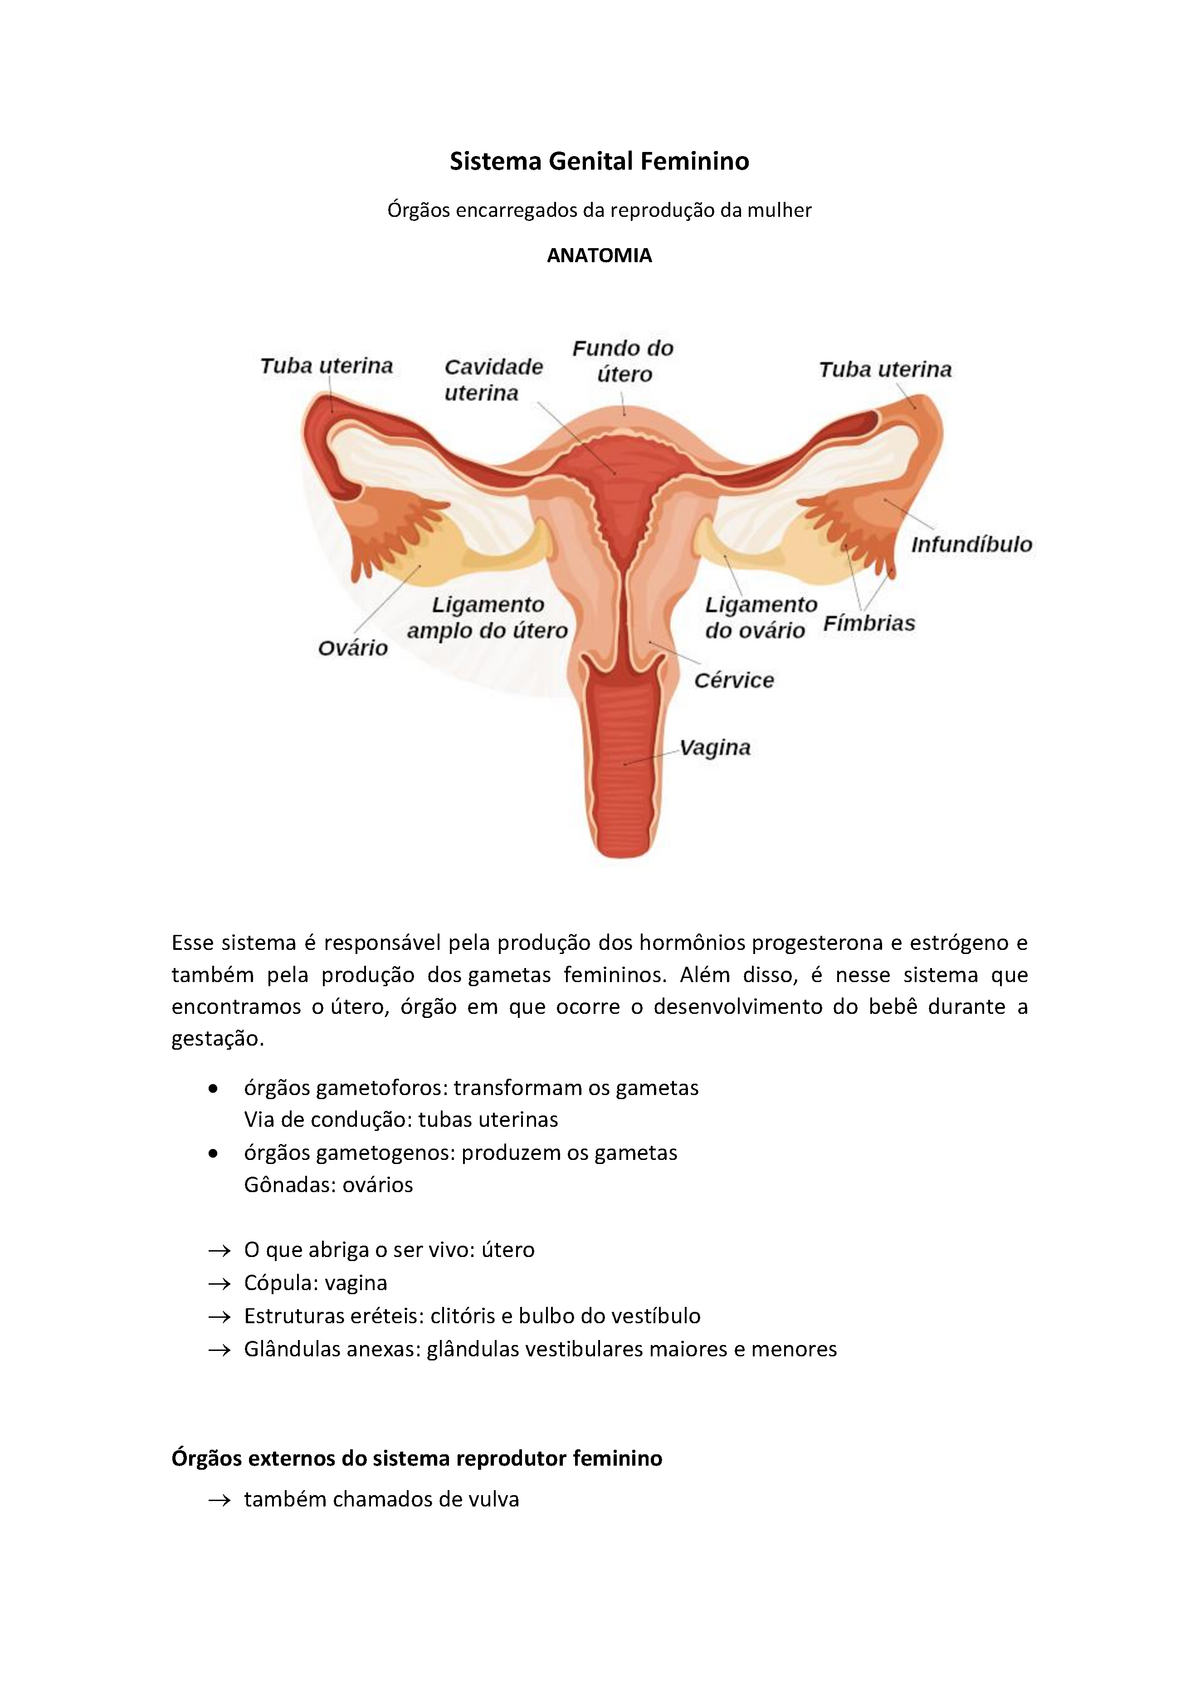 Sistema Genital Feminino - Sistema Genital Feminino Órgãos